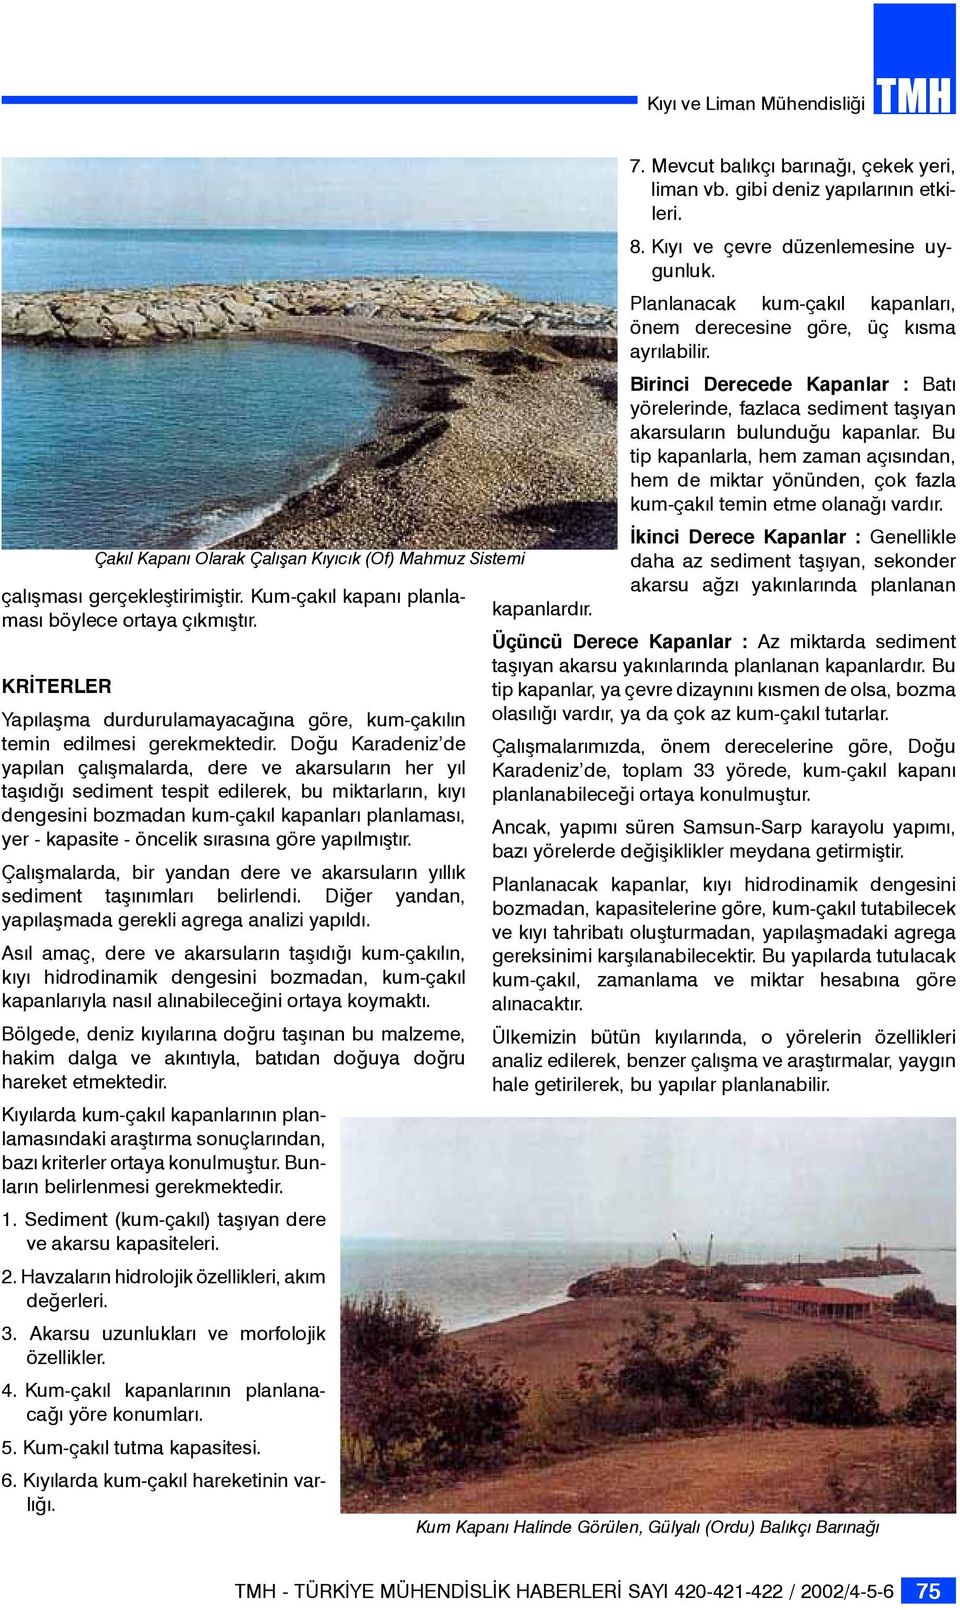 Doğu Karadeniz de yapılan çalışmalarda, dere ve akarsuların her yıl taşıdığı sediment tespit edilerek, bu miktarların, kıyı dengesini bozmadan kum-çakıl kapanları planlaması, yer - kapasite - öncelik